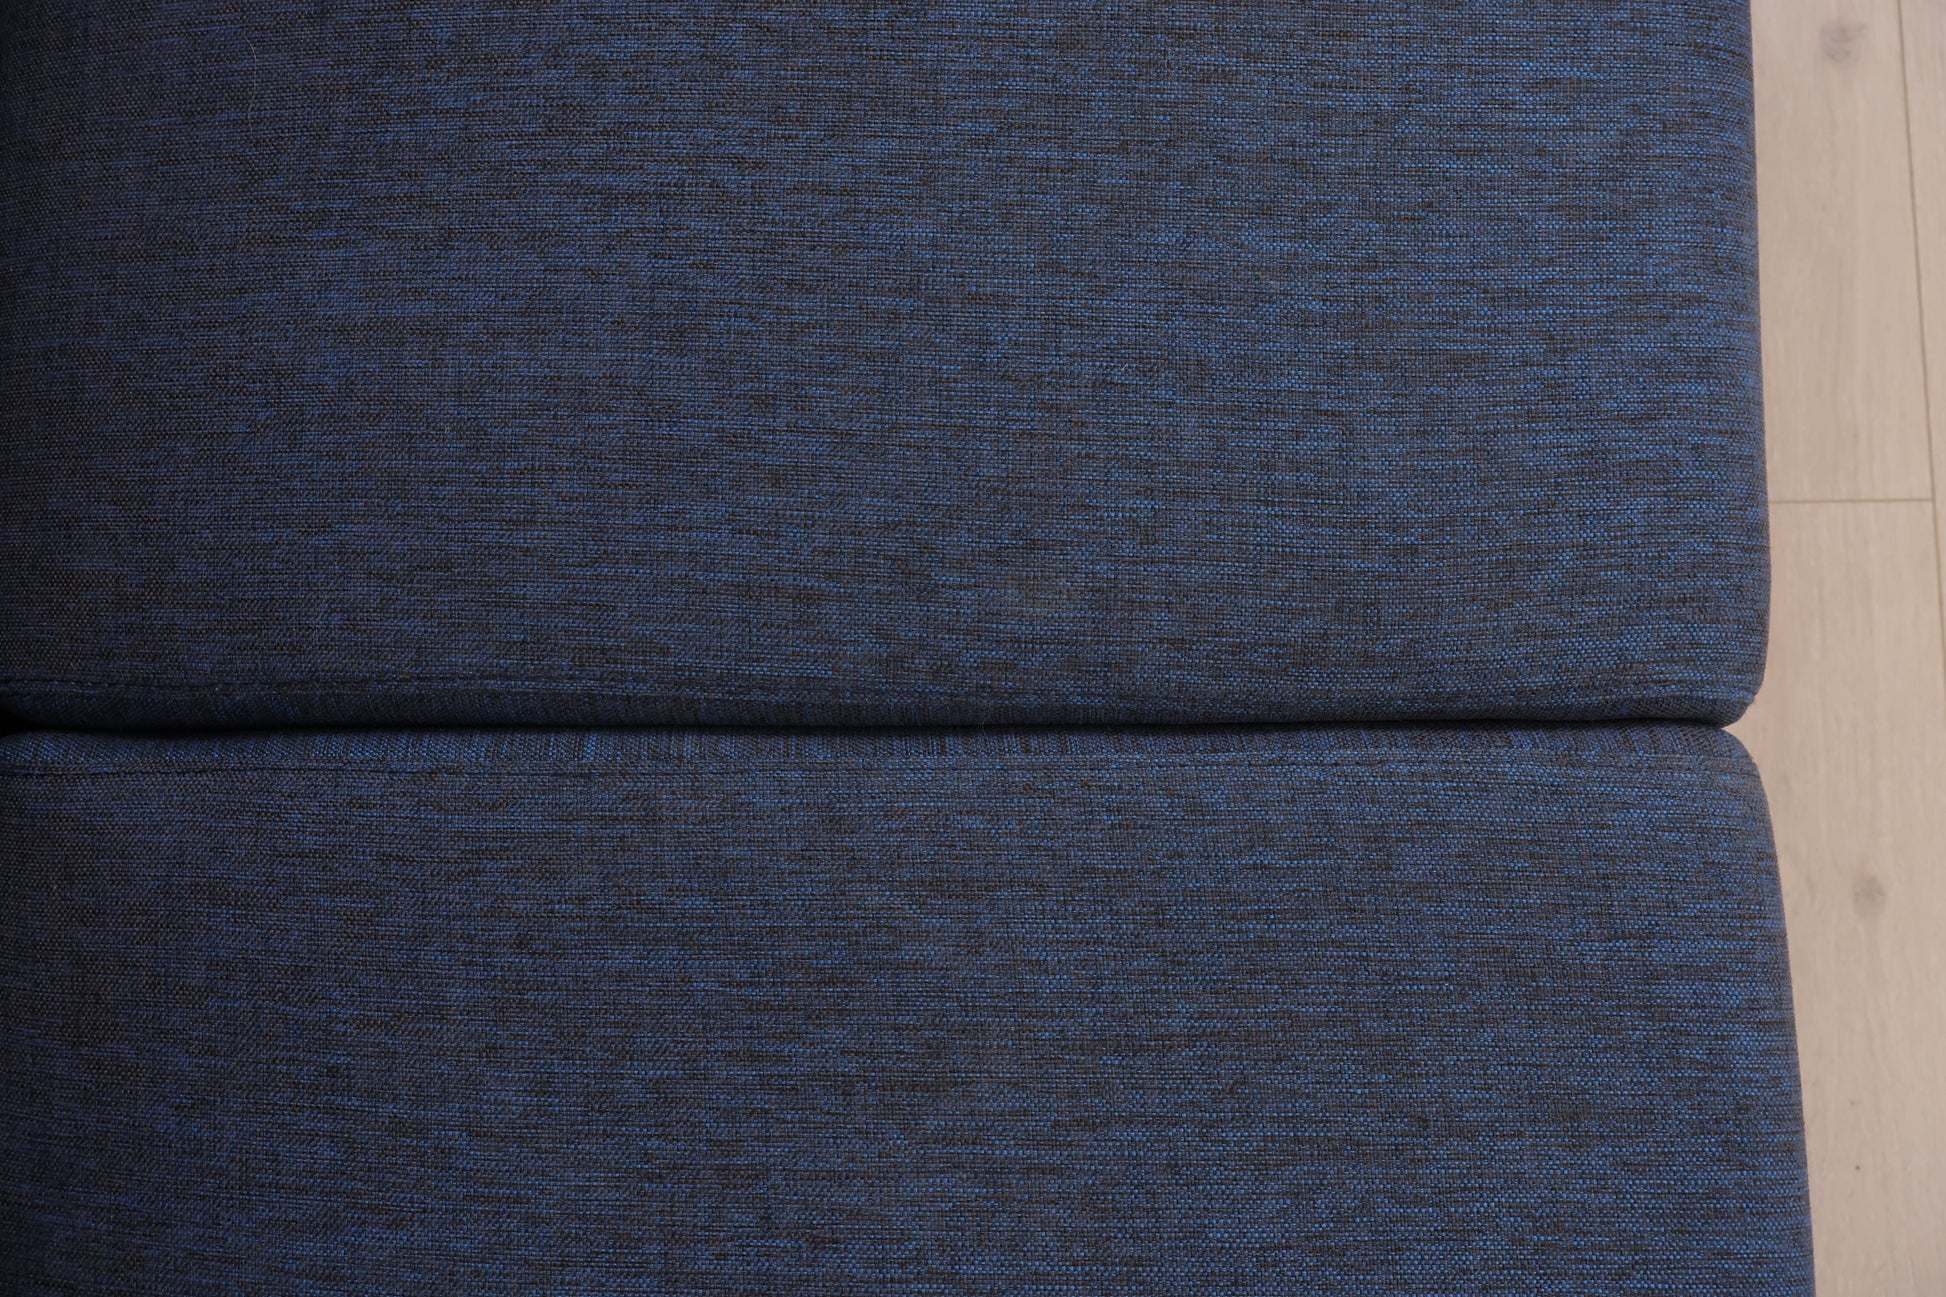 Nyrenset | Blå Bolia Seville 2,5-seter sofa